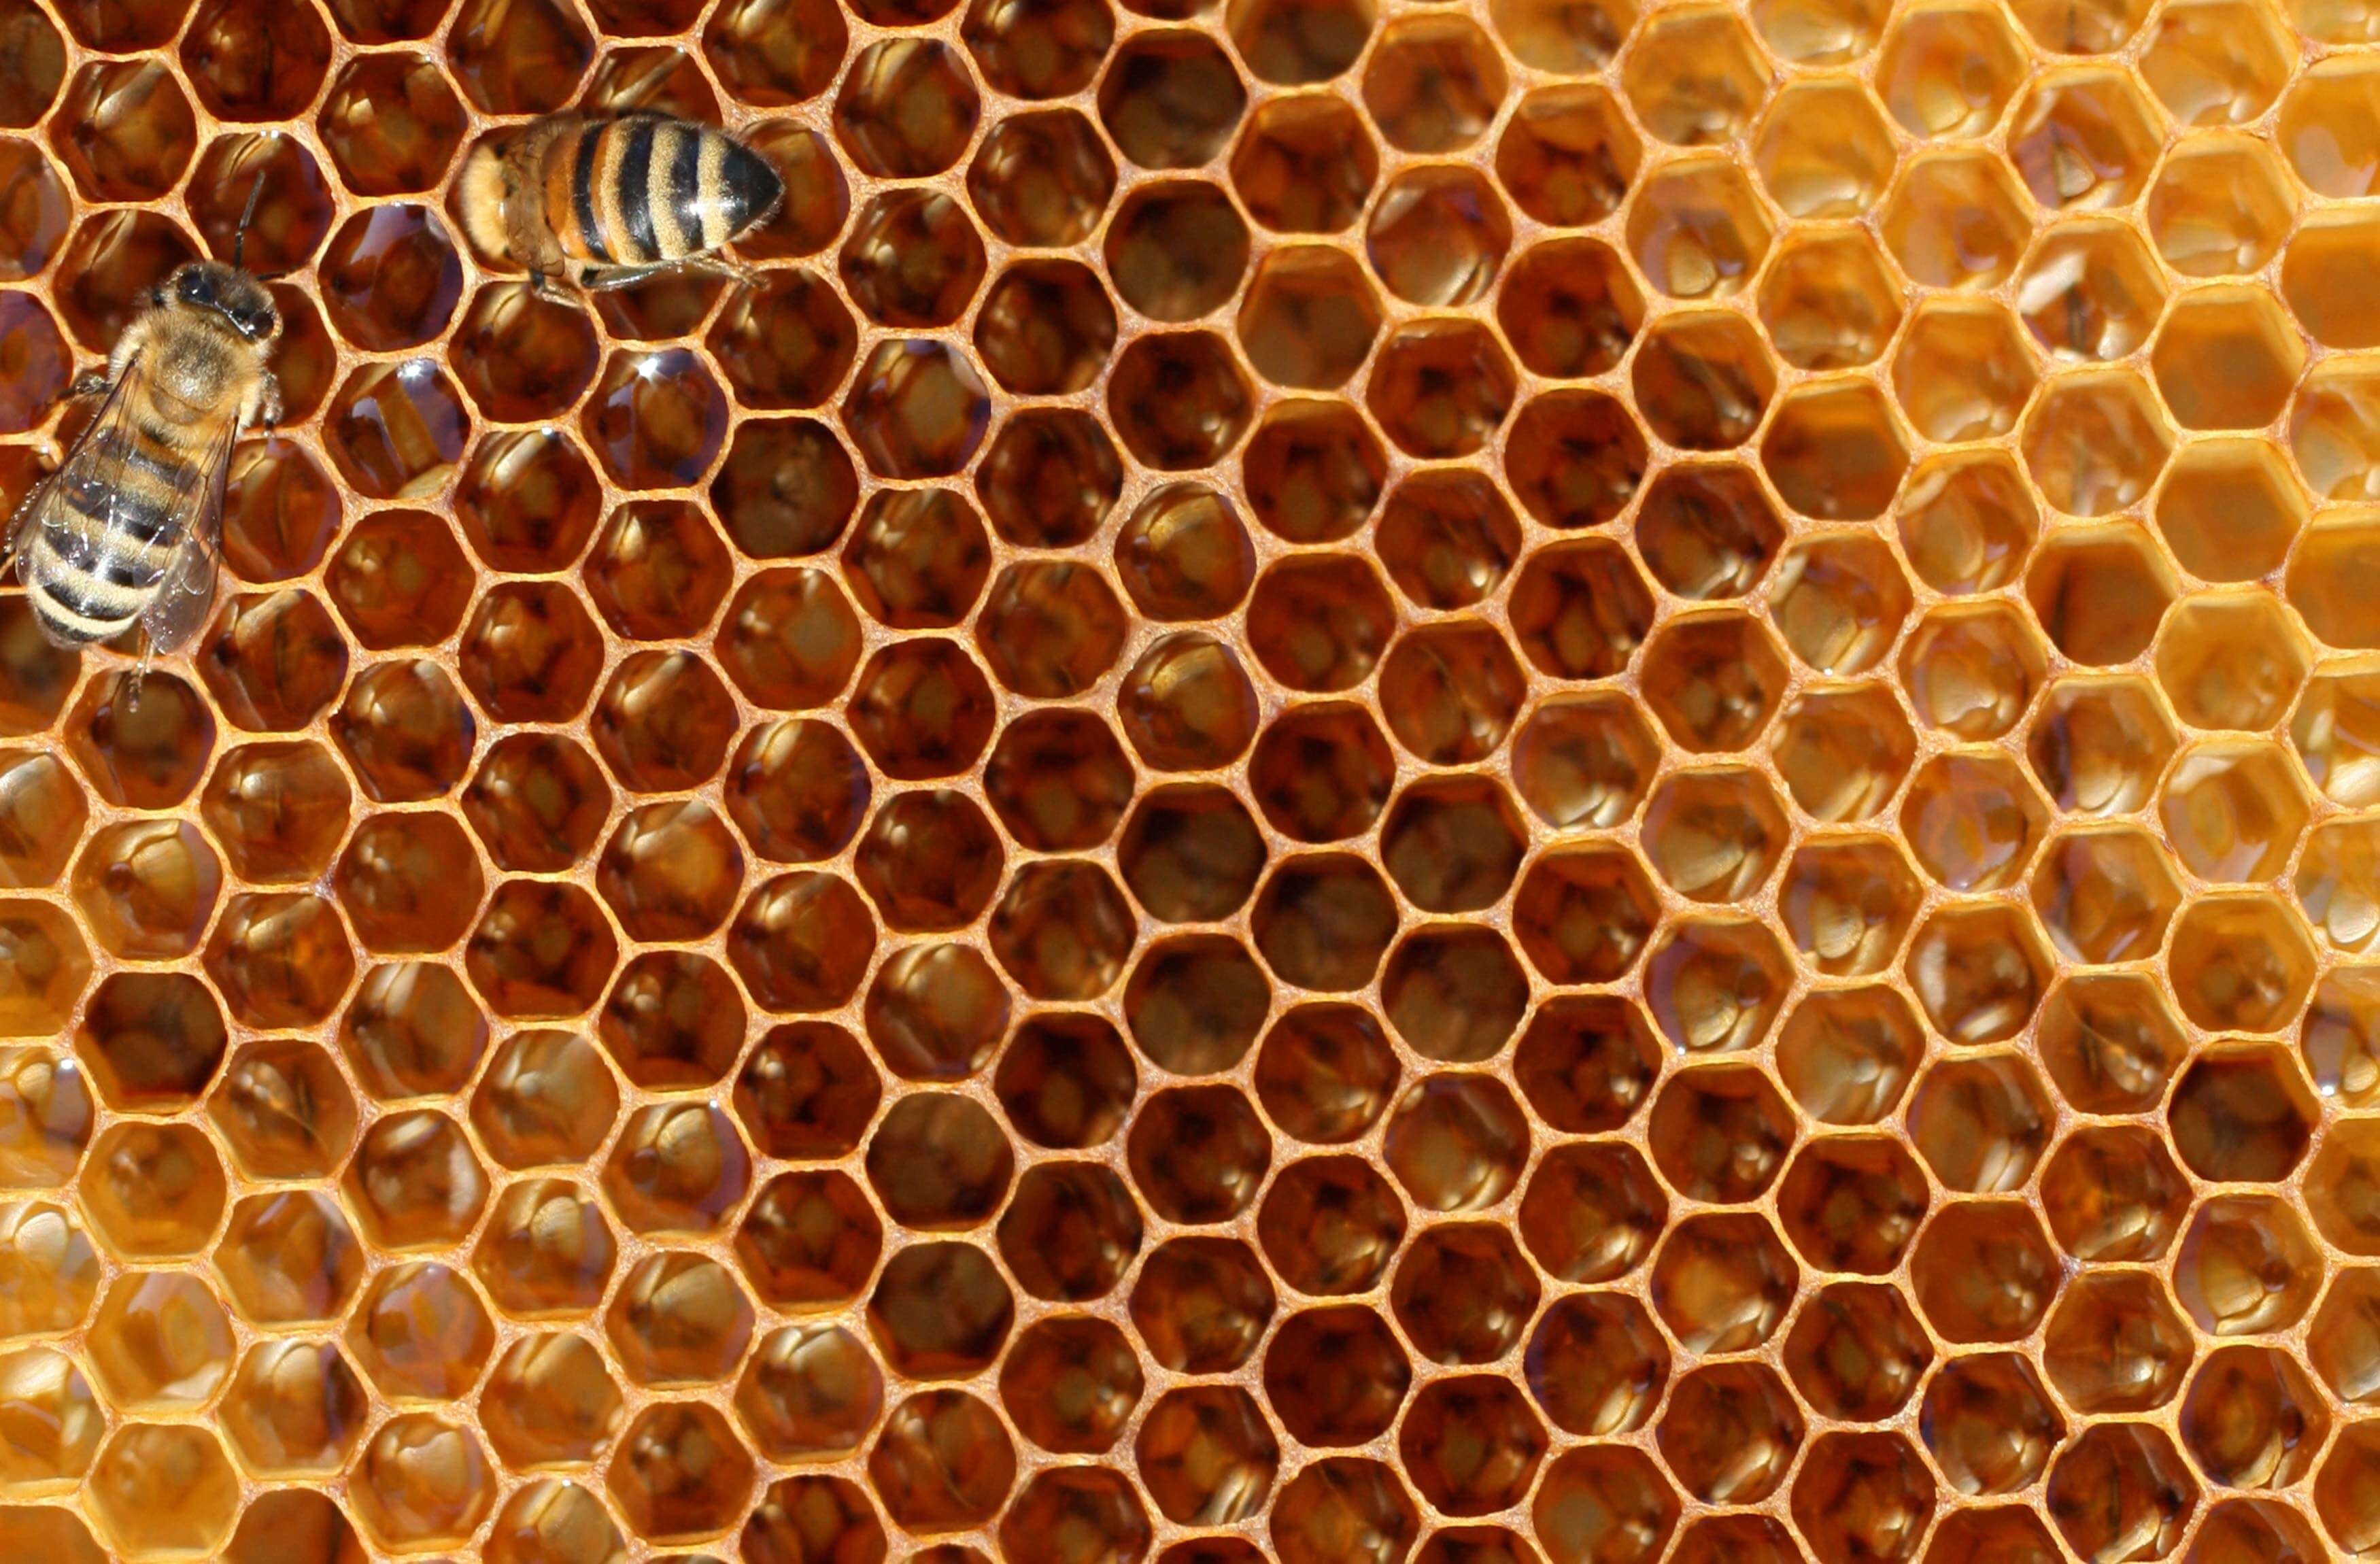 Вид сот. L386 сом медовые соты. Соты пчелиные. Соты меда. Фон соты.